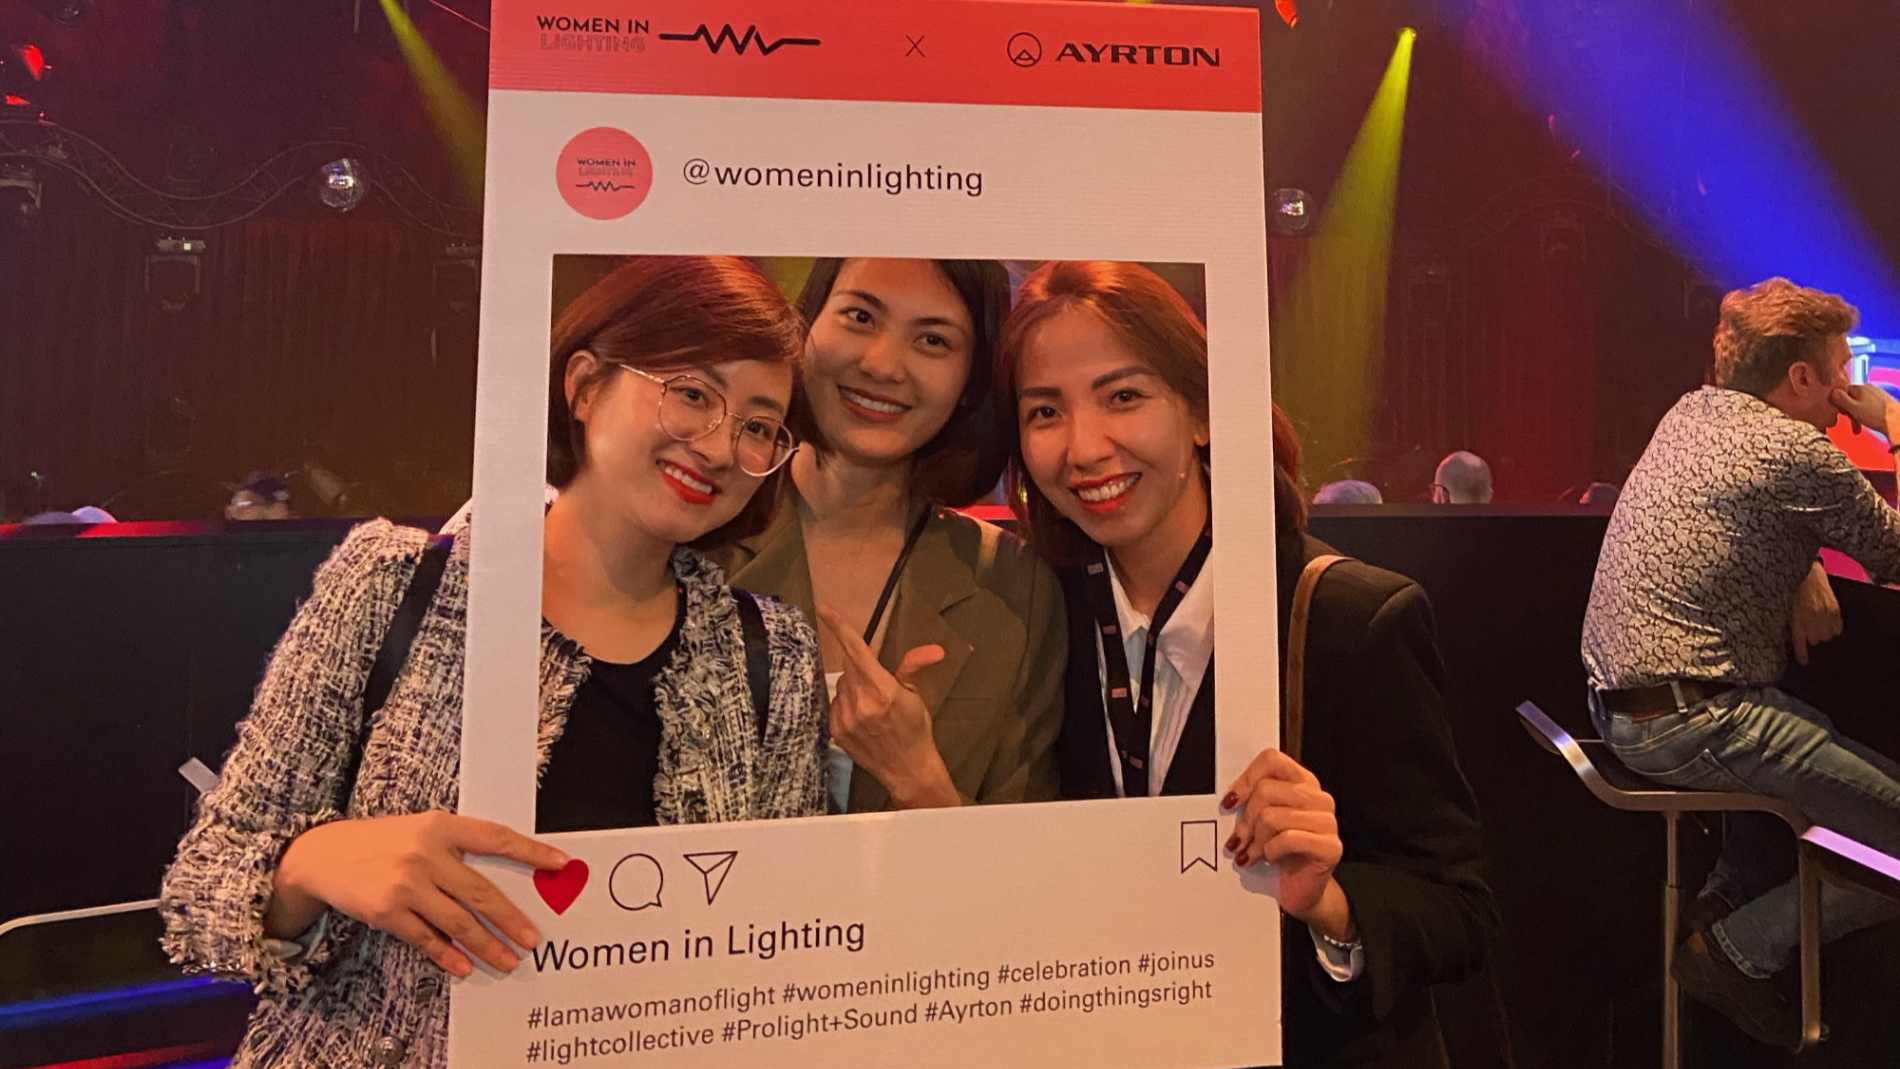 Die Initiative „Women in Lighting“ stärkt die Profilierung weiblicher Beschäftigter in Licht-Gewerken. (Quelle: Ayrton)